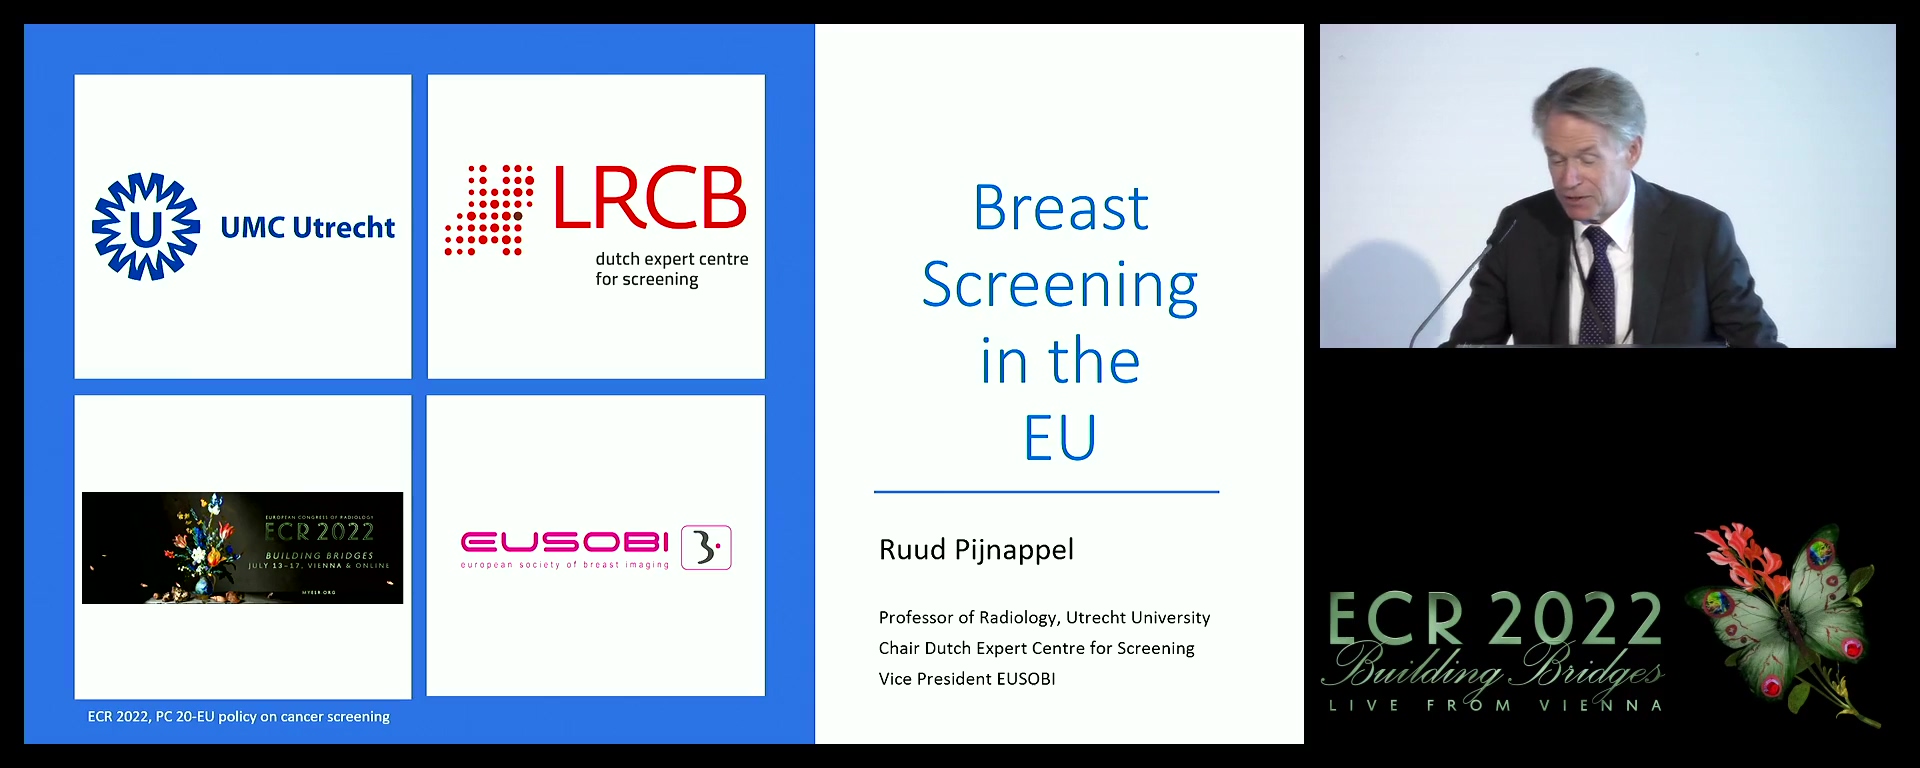 Breast screening in the EU - Ruud M. Pijnappel, Utrecht / NL